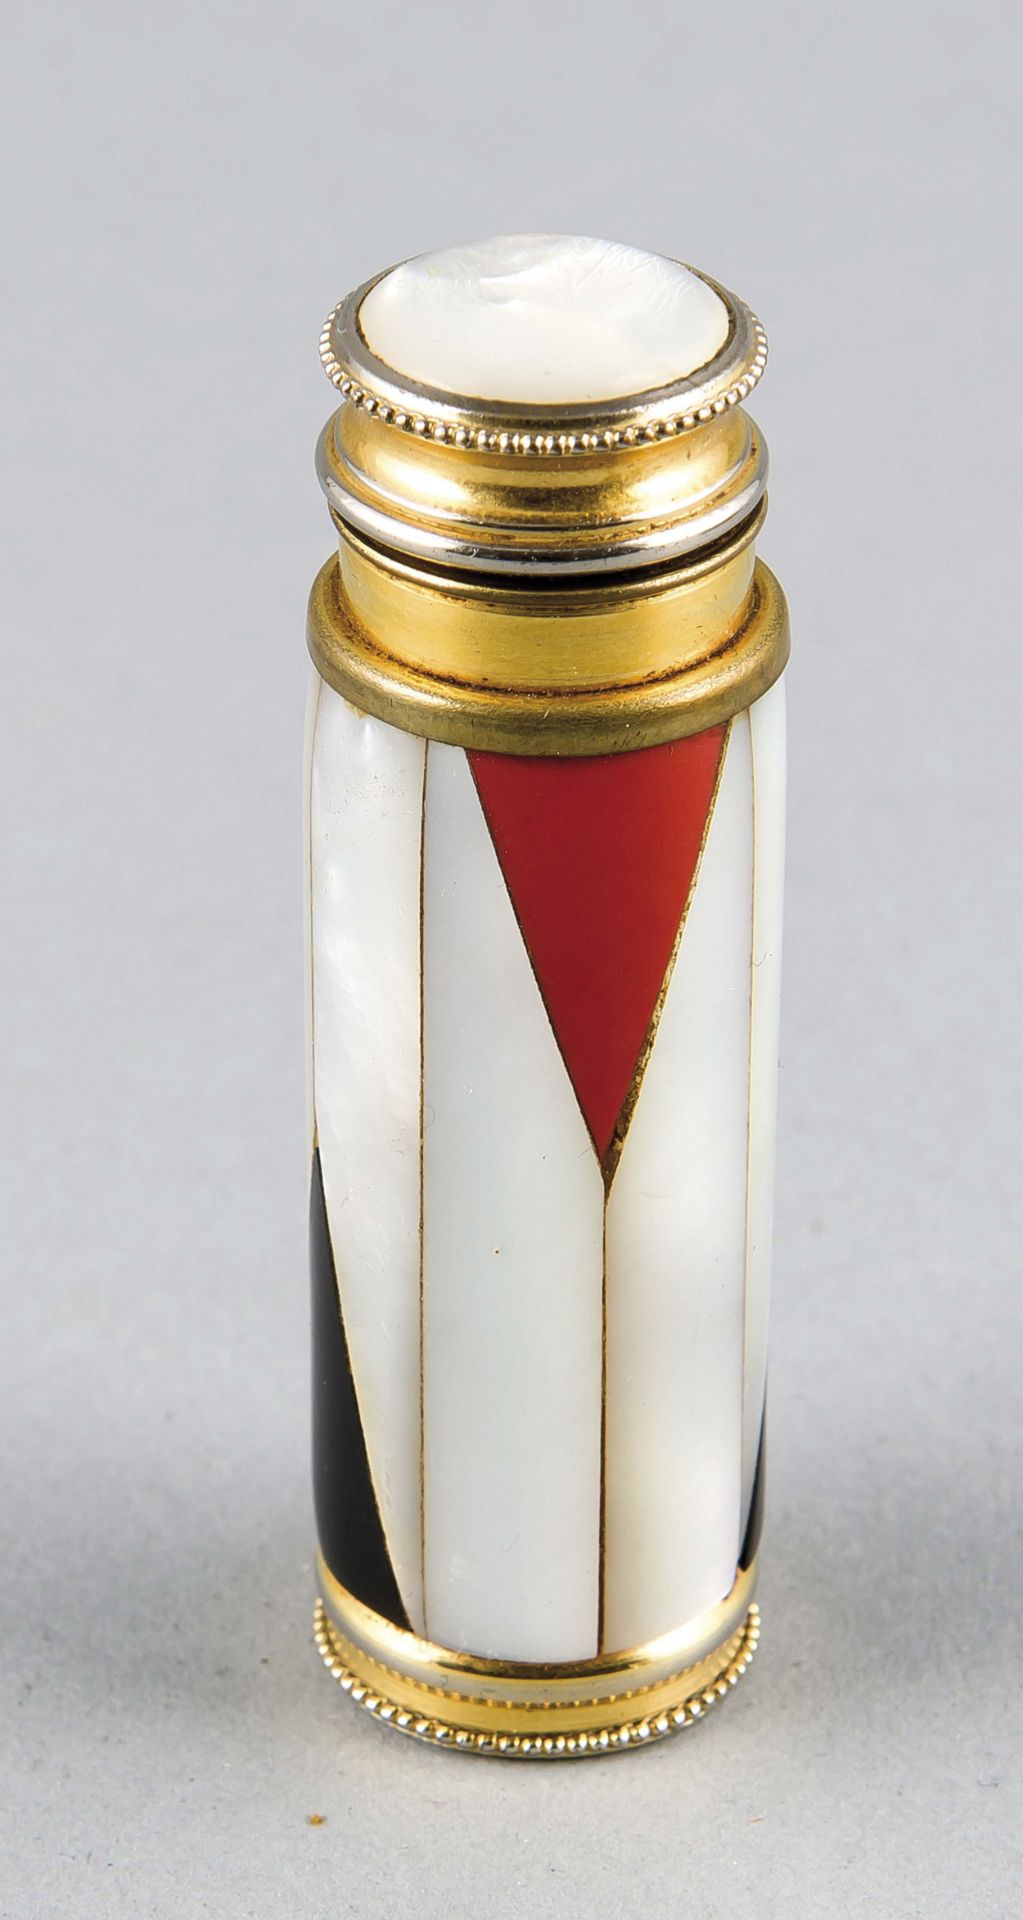 Art déco Parfümzerstäuber, 1920er Jahre, Messing mit Perlmutteinlagen, zylindrische Form,L. 6,5